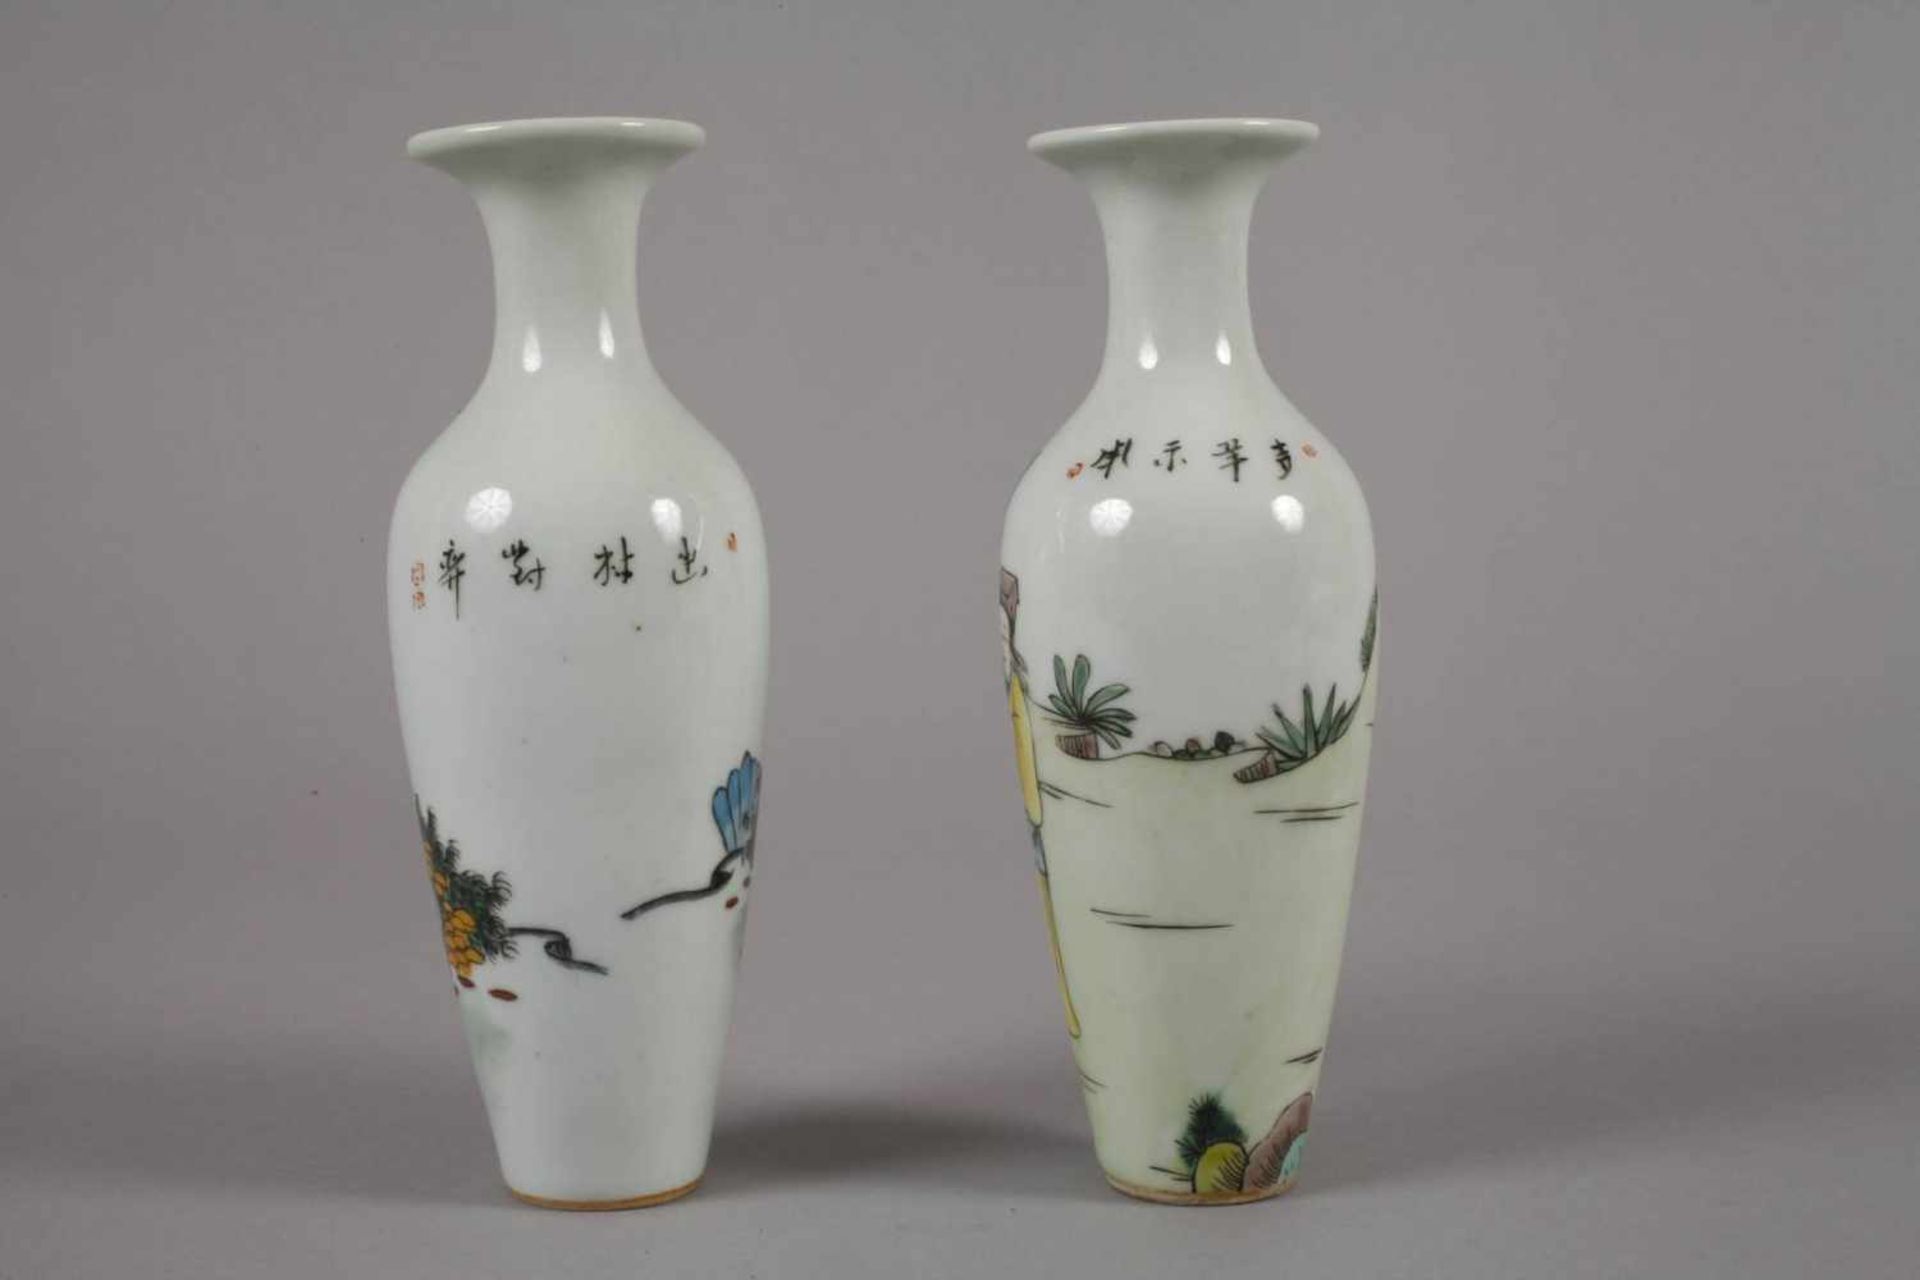 Sechs Vasen China1960er bis 1970er Jahre, gemarkt und signiert, Weißporzellan in polychromer - Bild 9 aus 12